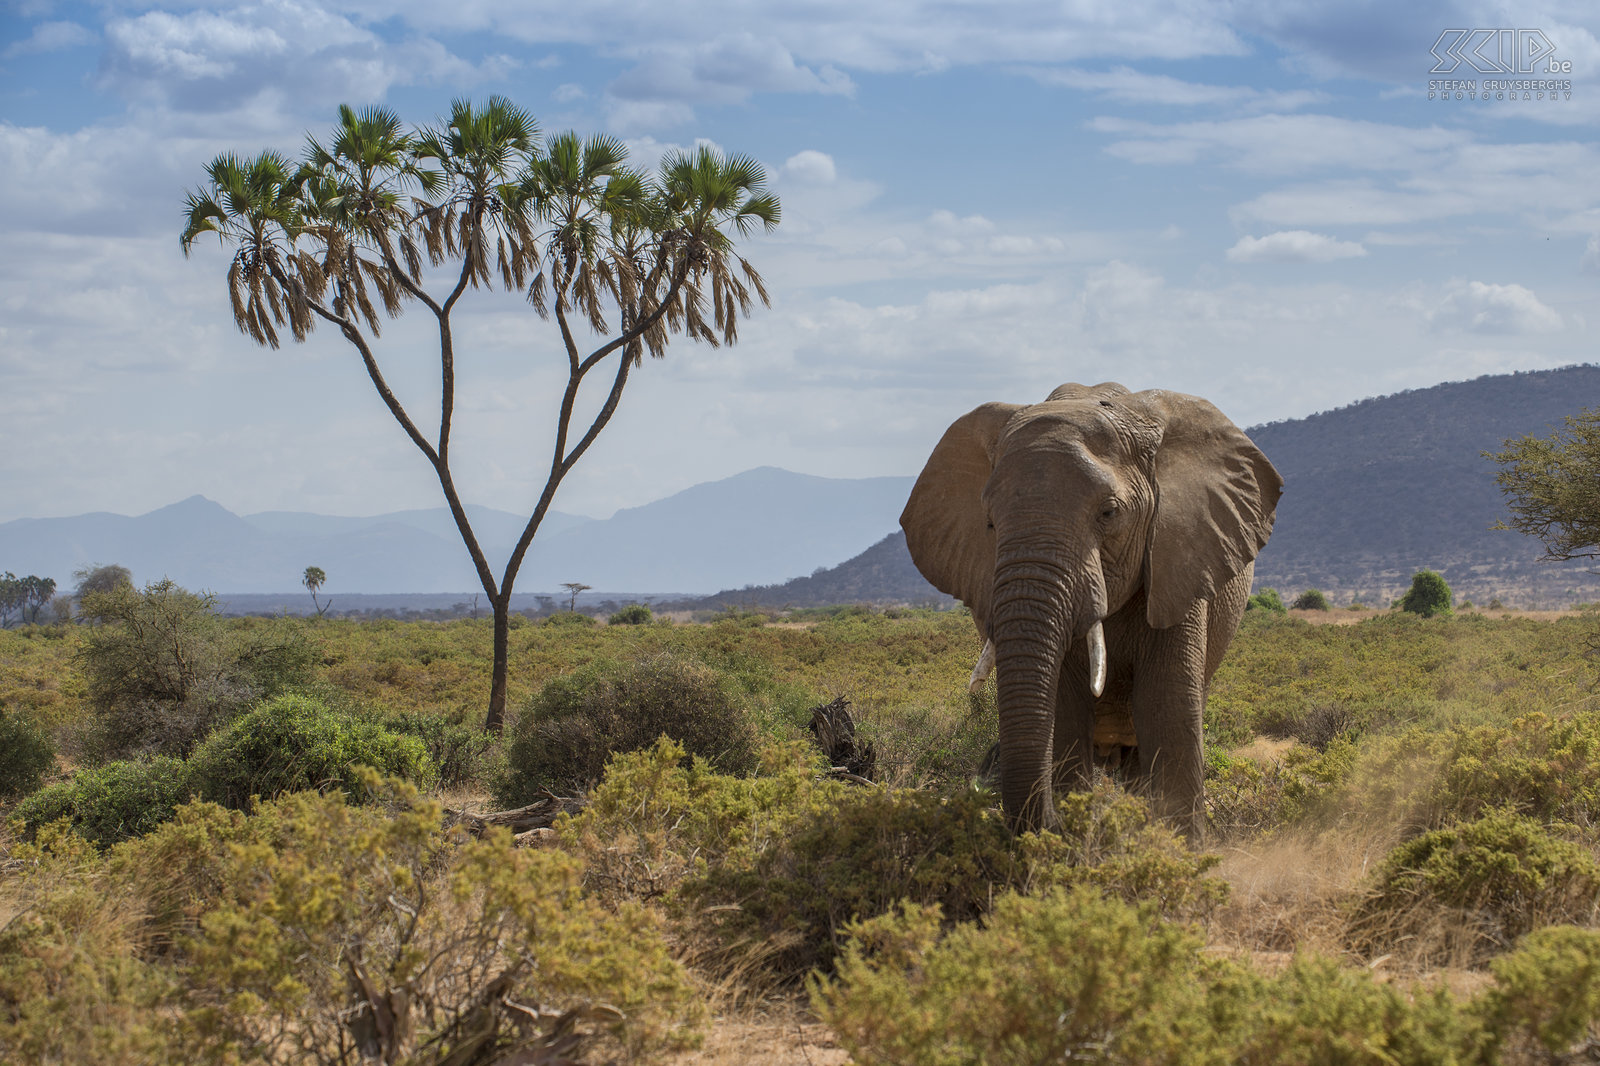 Samburu - Olifant Samburu national park heeft een mix van acacia, doornstruiken en savanne vegetatie. In het midden van het reservaat stroomt de Ewaso Ng'iro langsheen palmbomen. Natuurlijk trekt de rivier heel wat olifanten aan. Stefan Cruysberghs